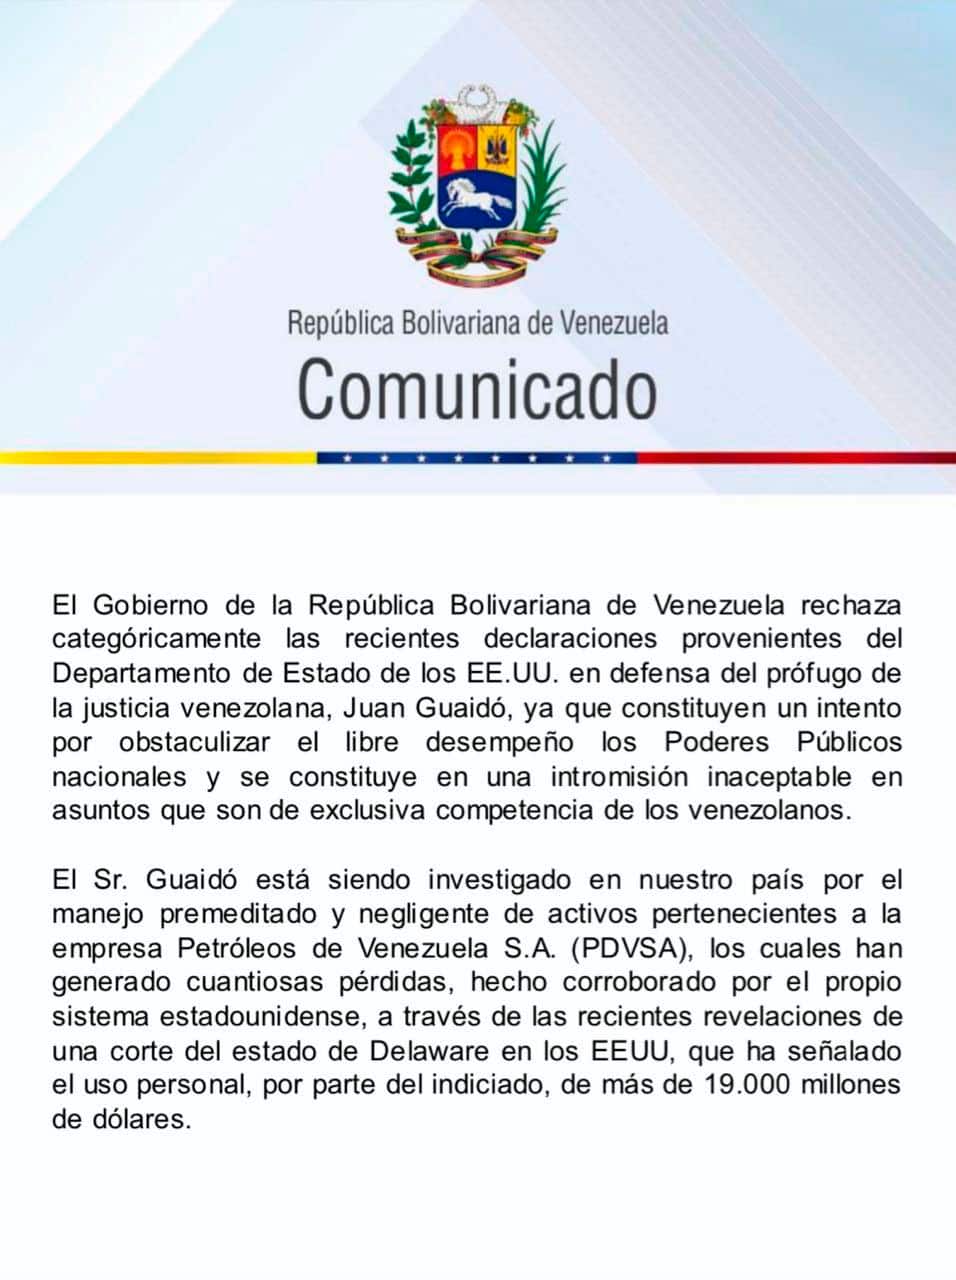 comunicado-venezuela-juan-guaido-1